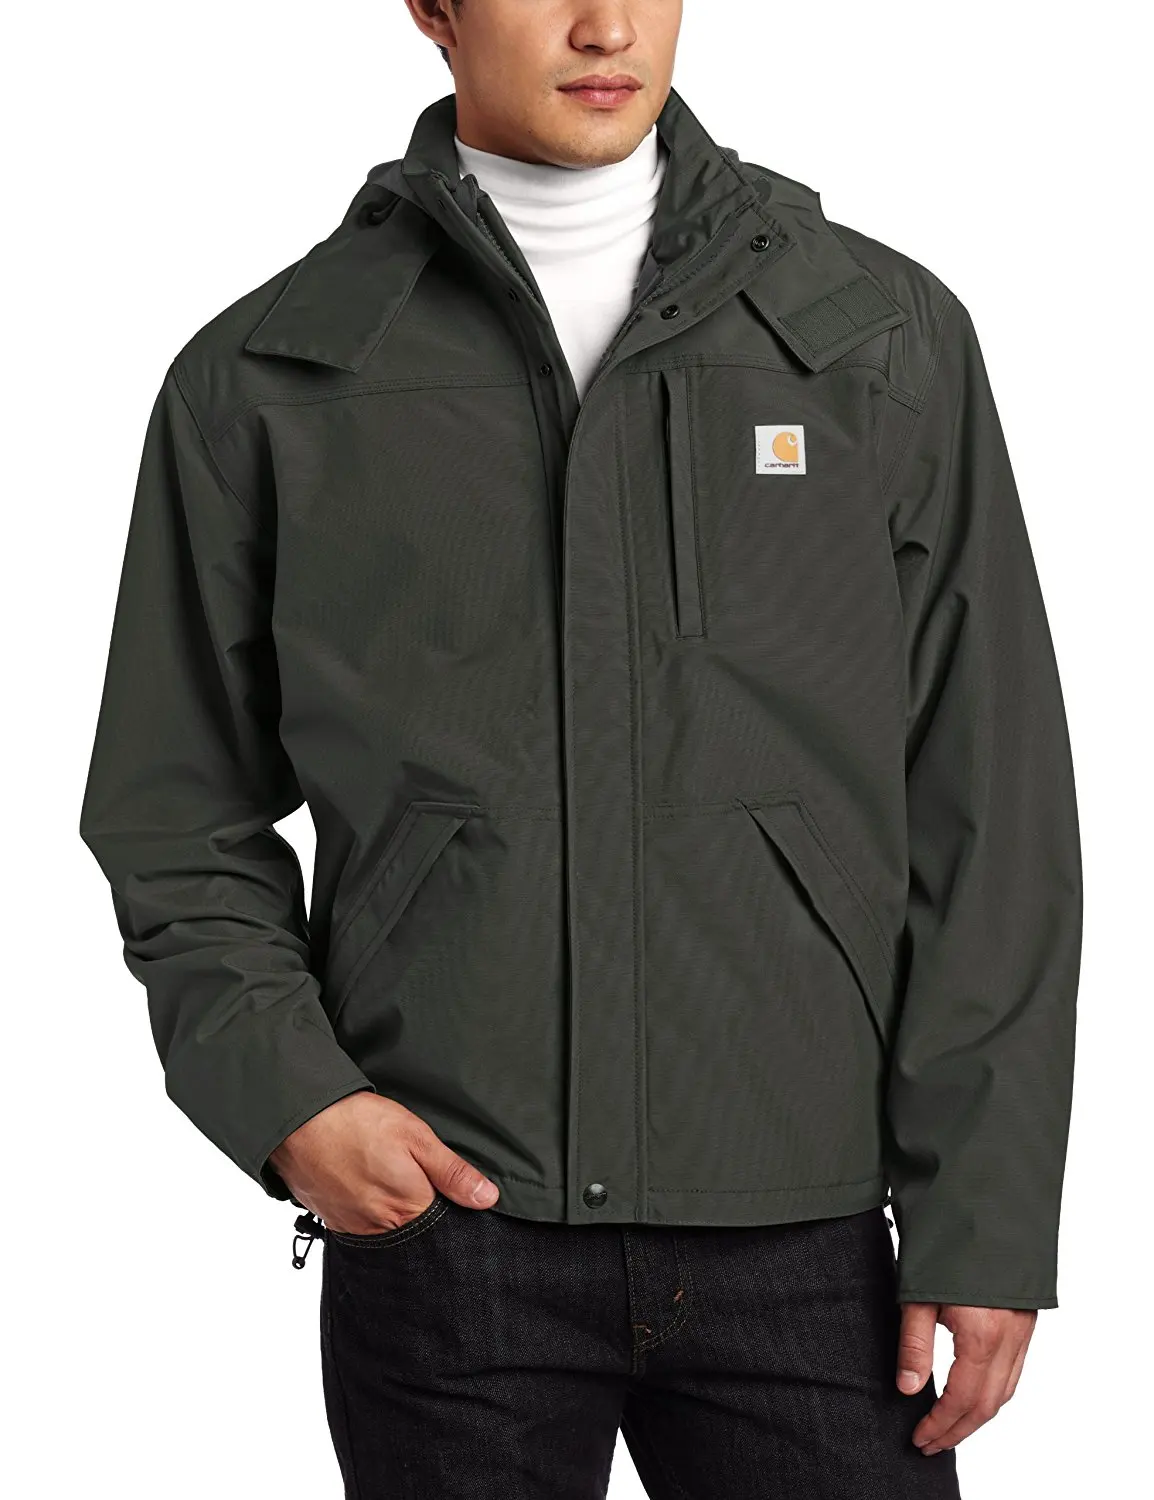 Cheap Carhartt Waterproof Breathable Jacket, find Carhartt Waterproof ...